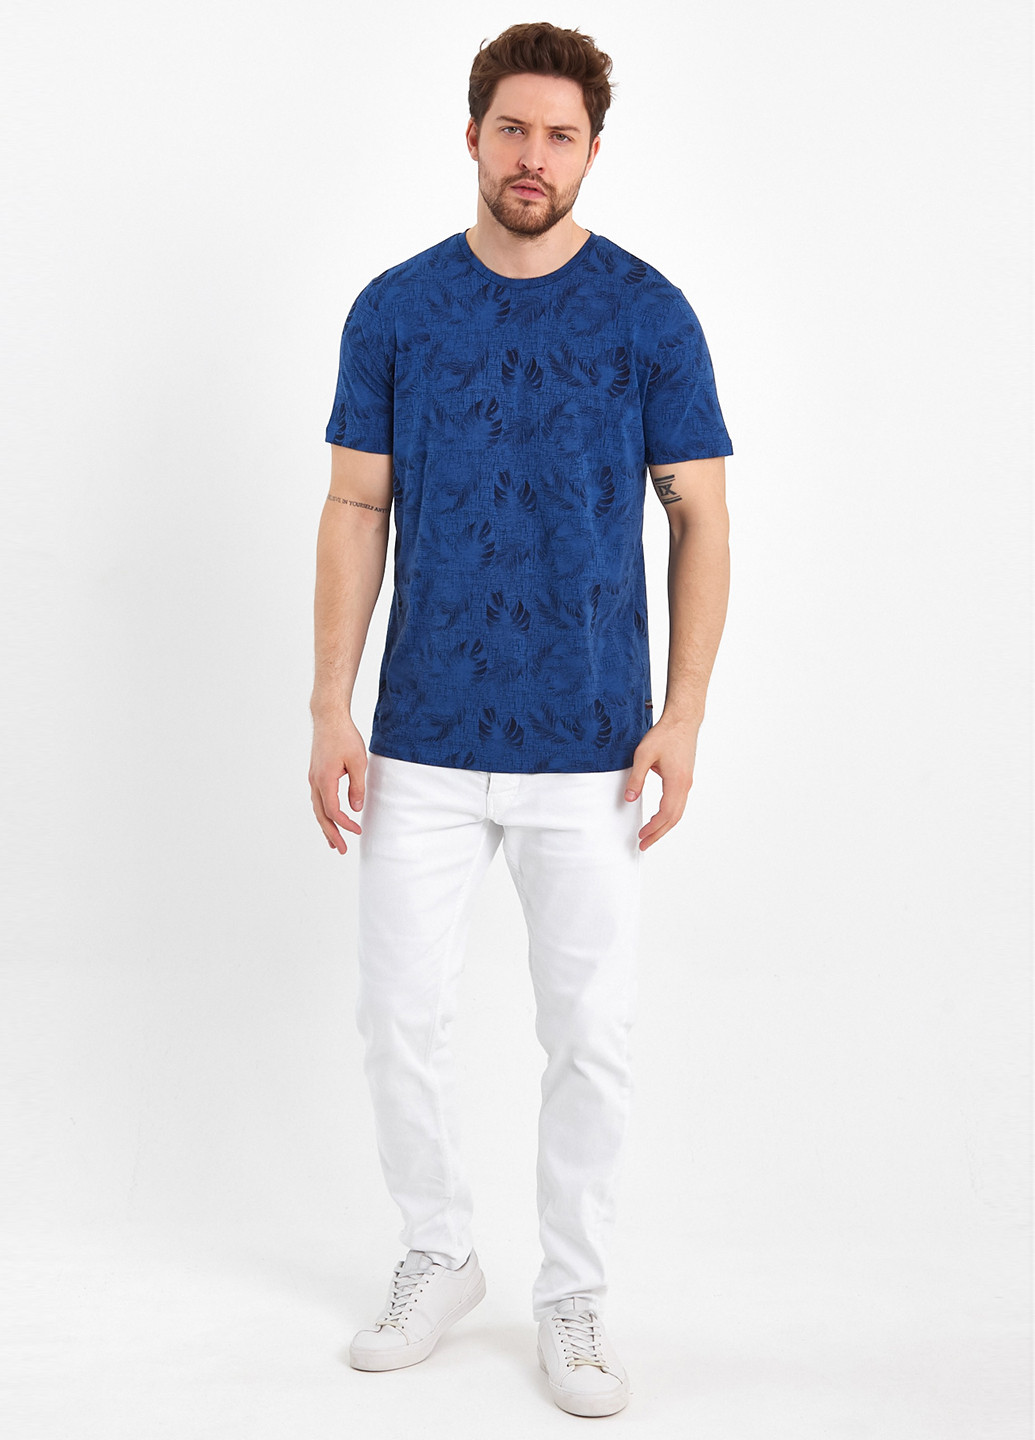 Индиго футболка-футболка для мужчин Trend Collection с рисунком